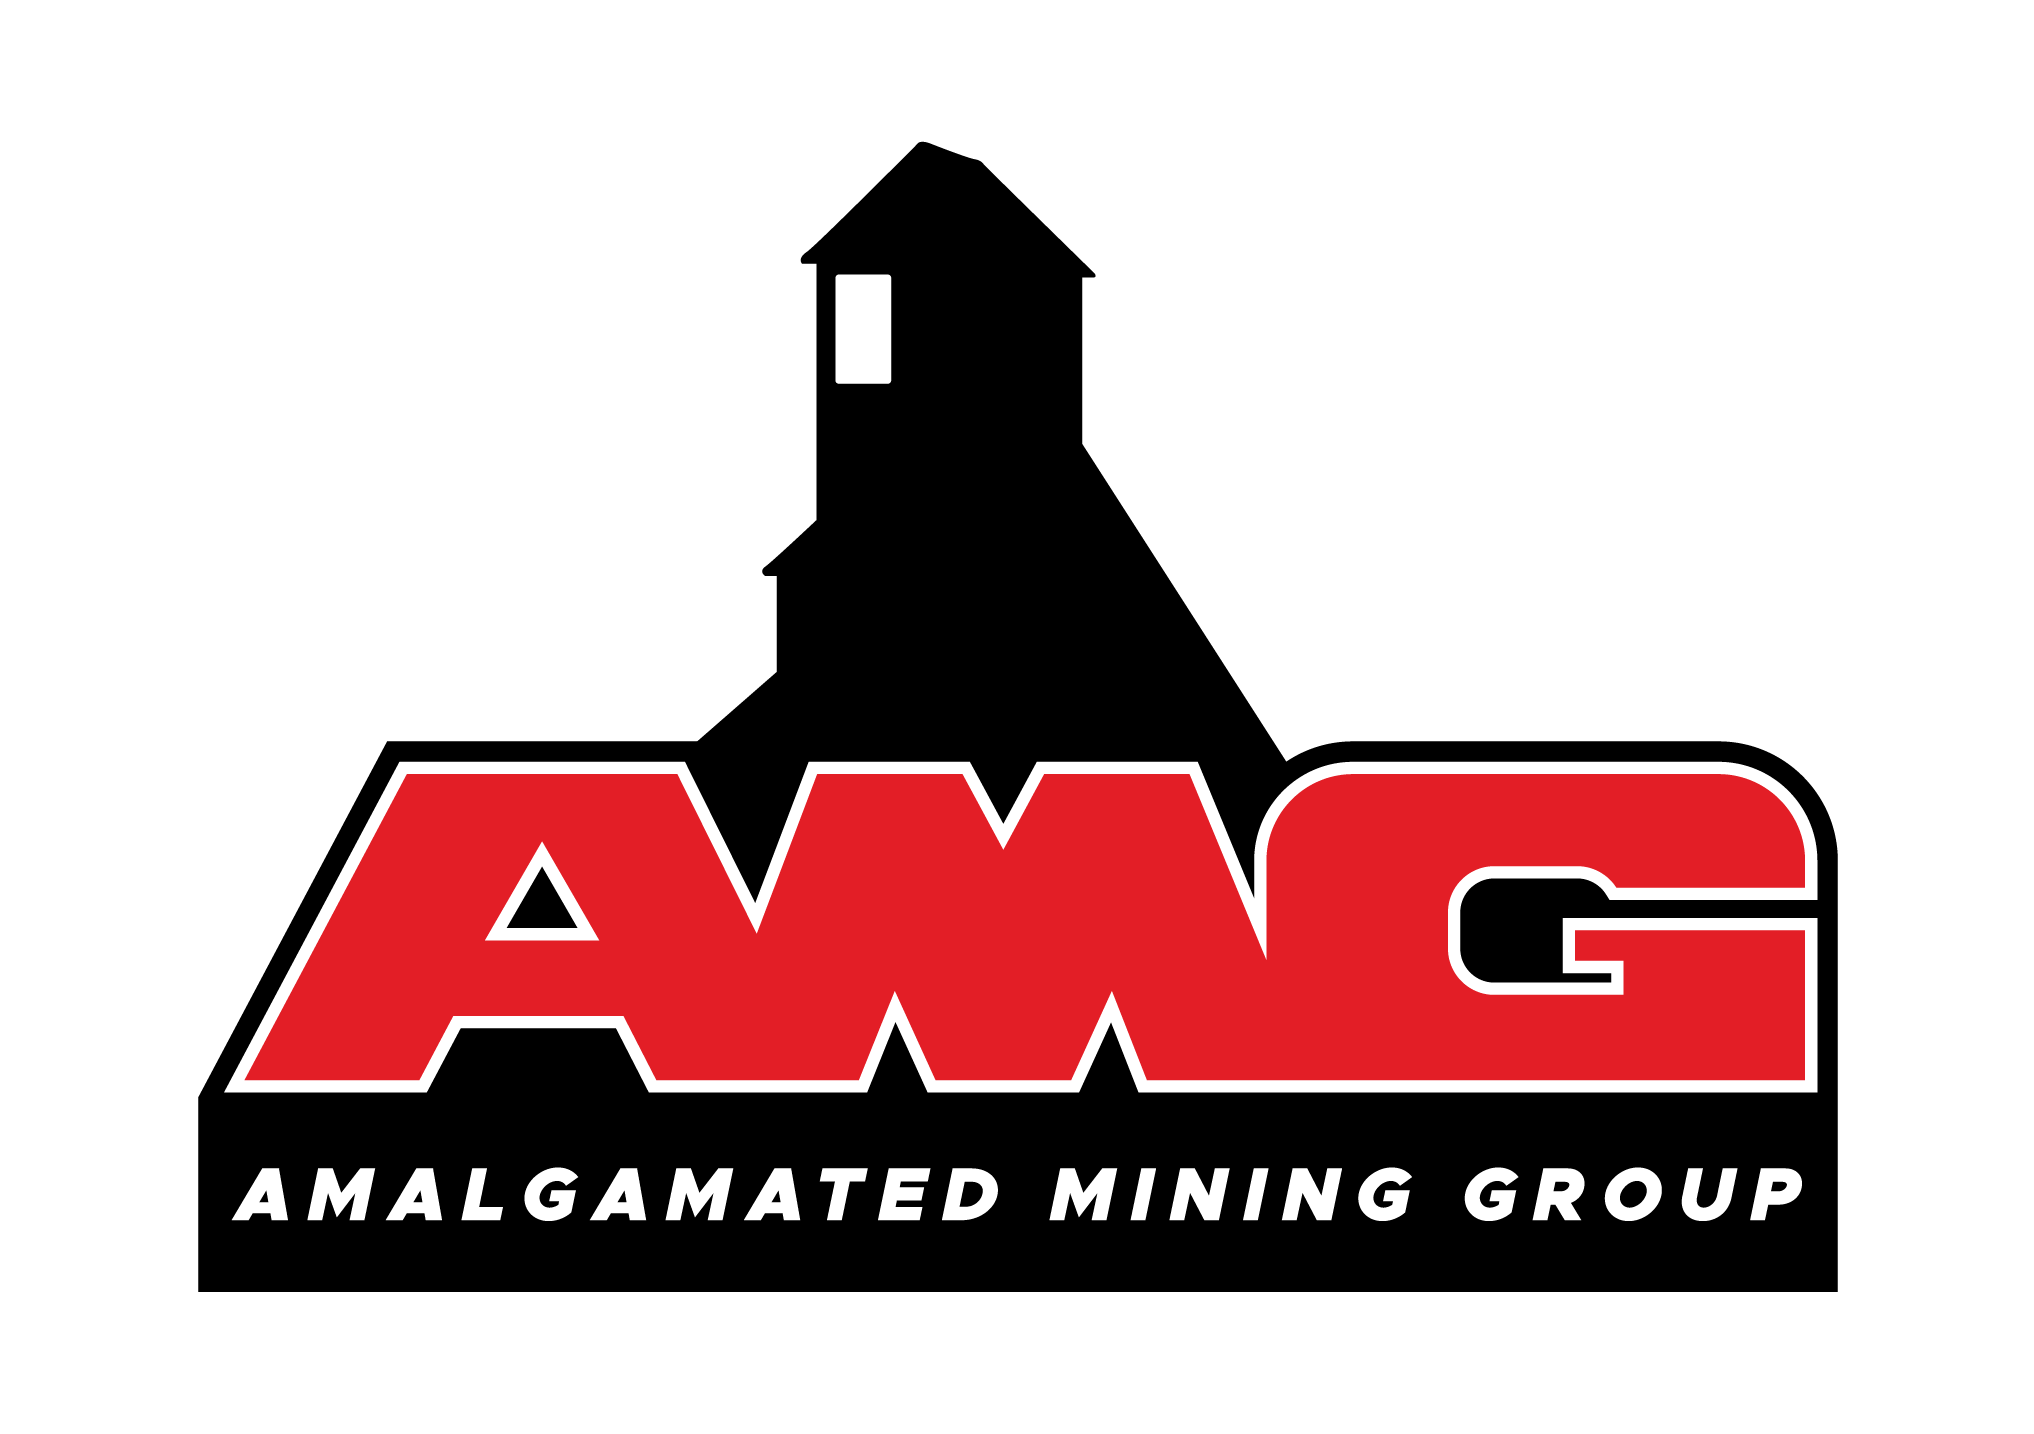 Amalgamated Mining Group Sponsors Whitemud Creek Mining Co.